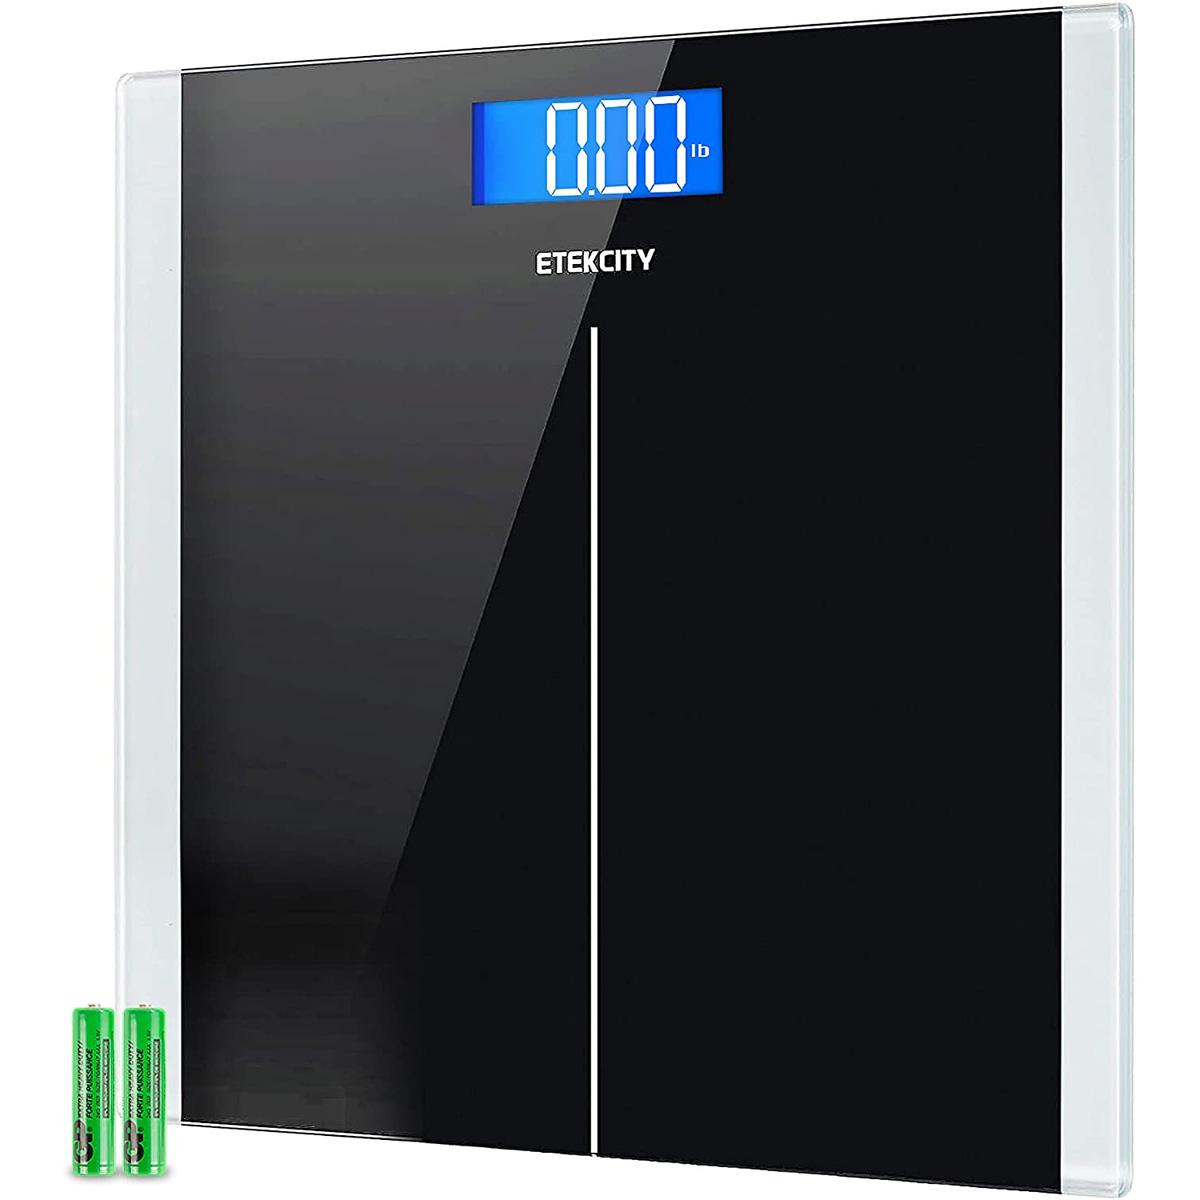 Etekcity Digital Body Weight Bathroom Scale for $15.99